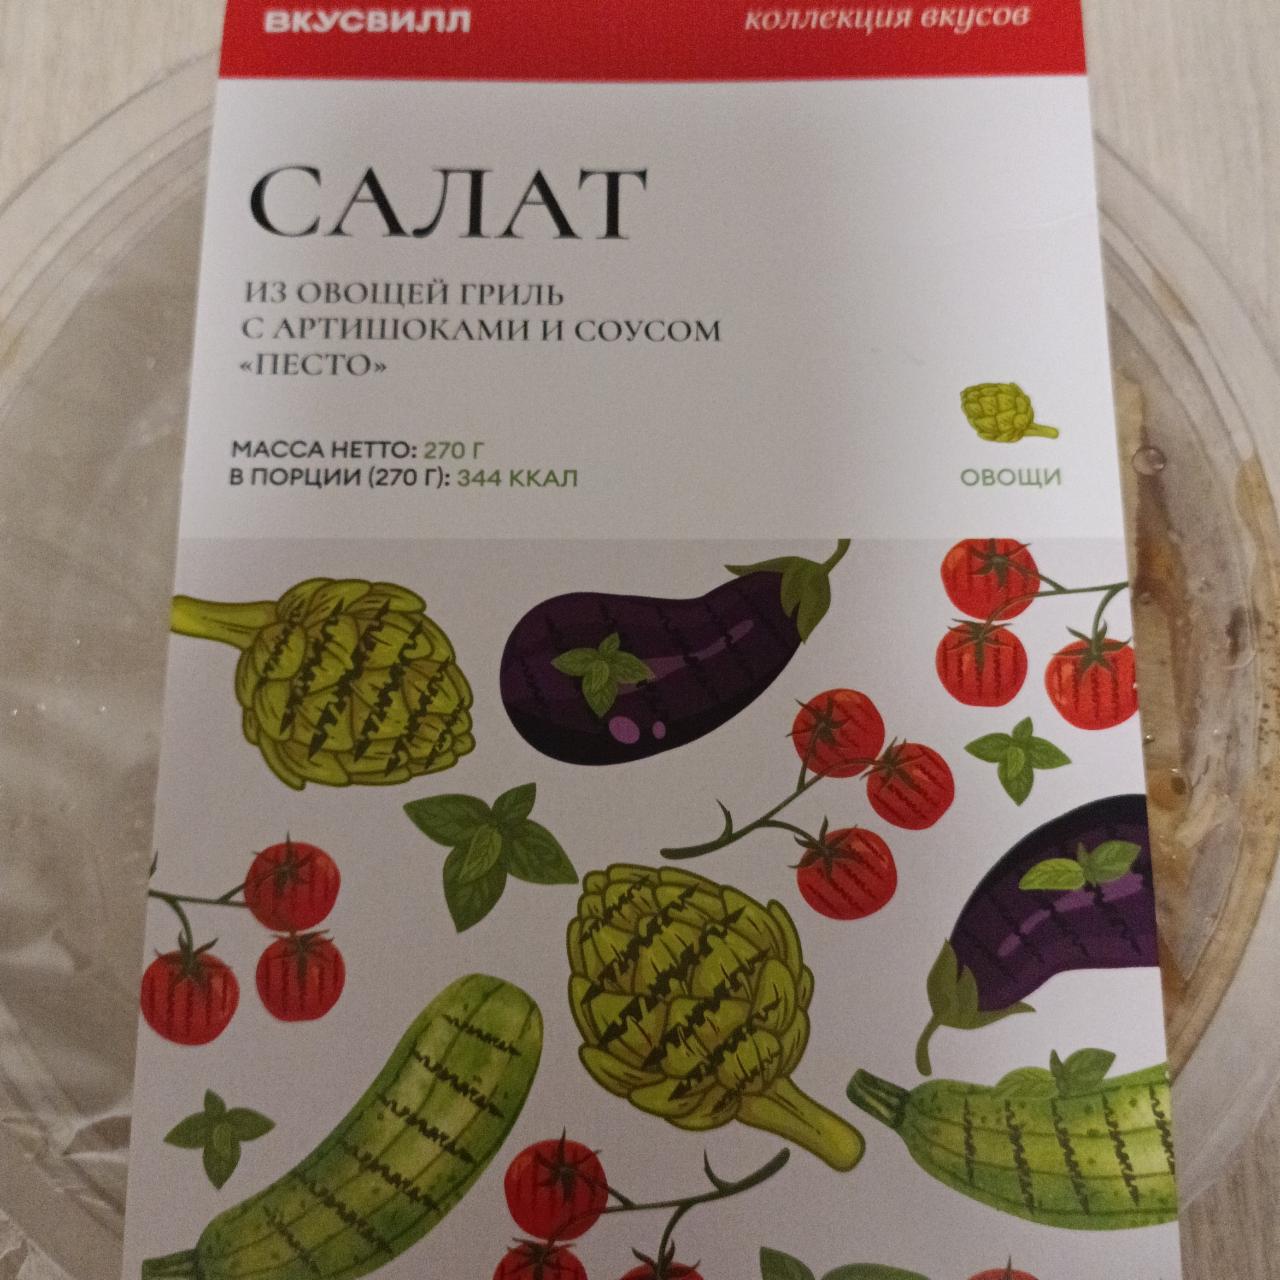 Фото - Салат из овощей гриль с артишоками и соусом Песто, ВкусВилл